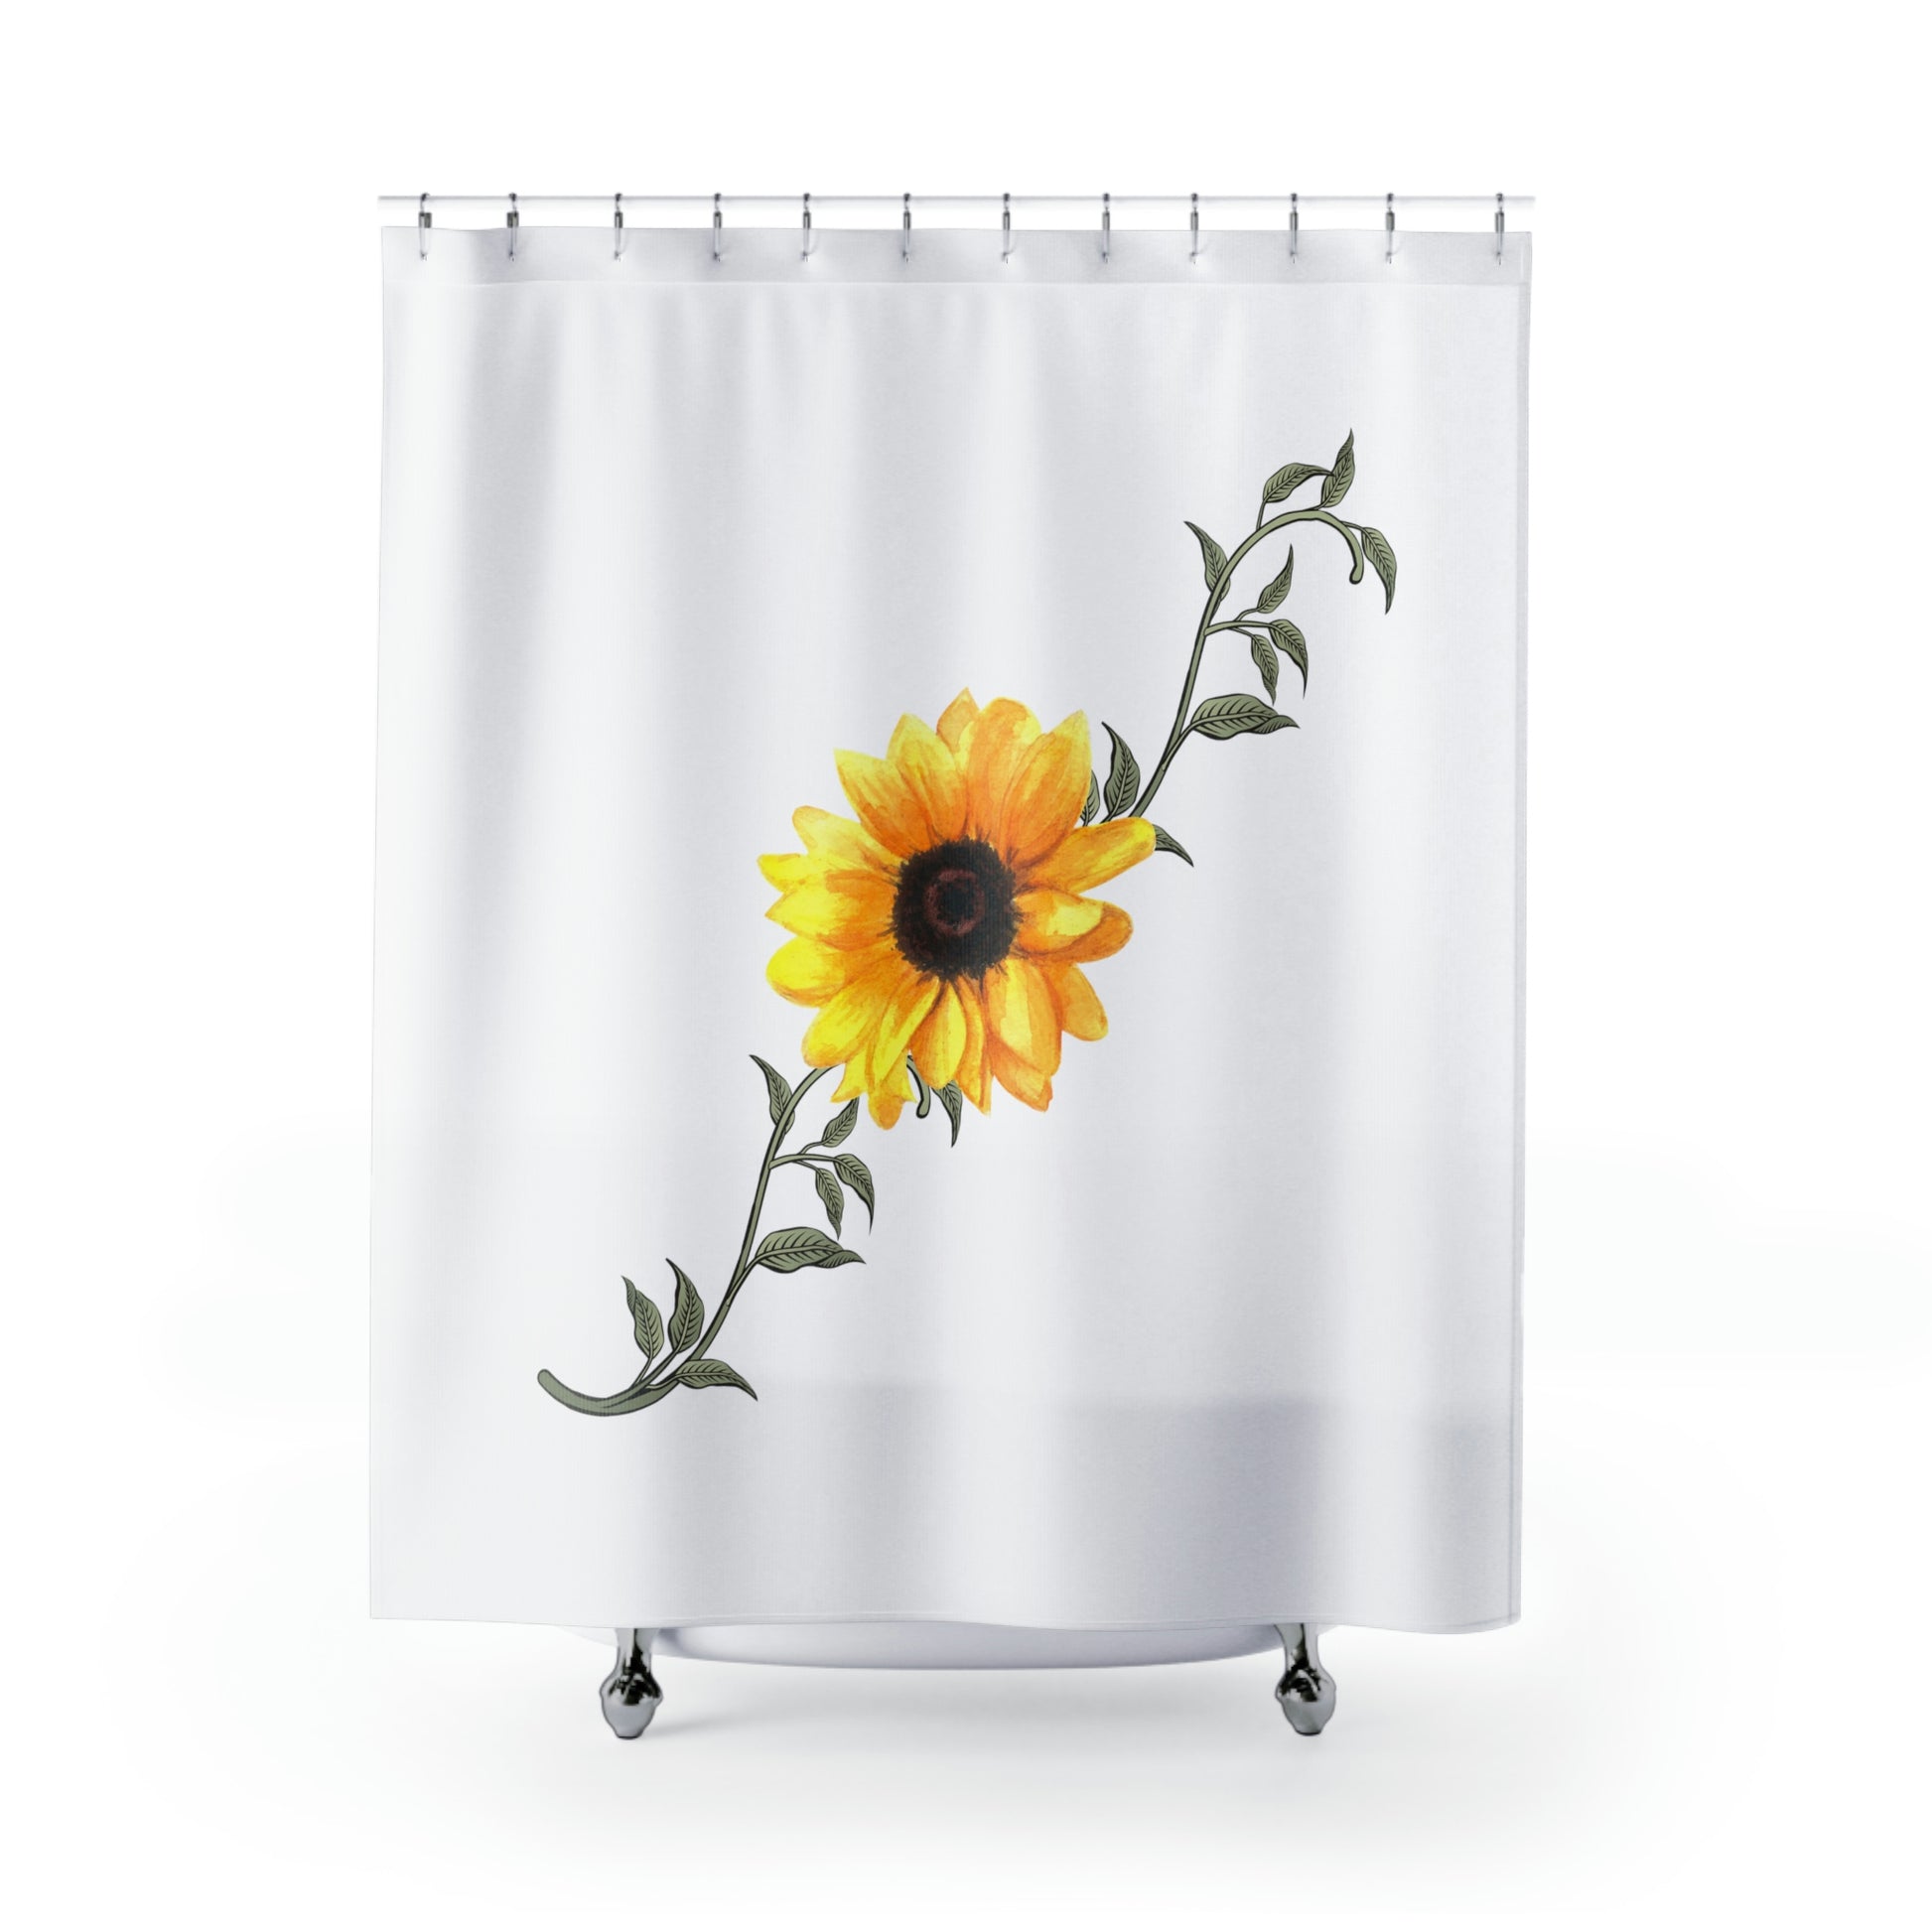 sunflower shower curtain in minimalist decor